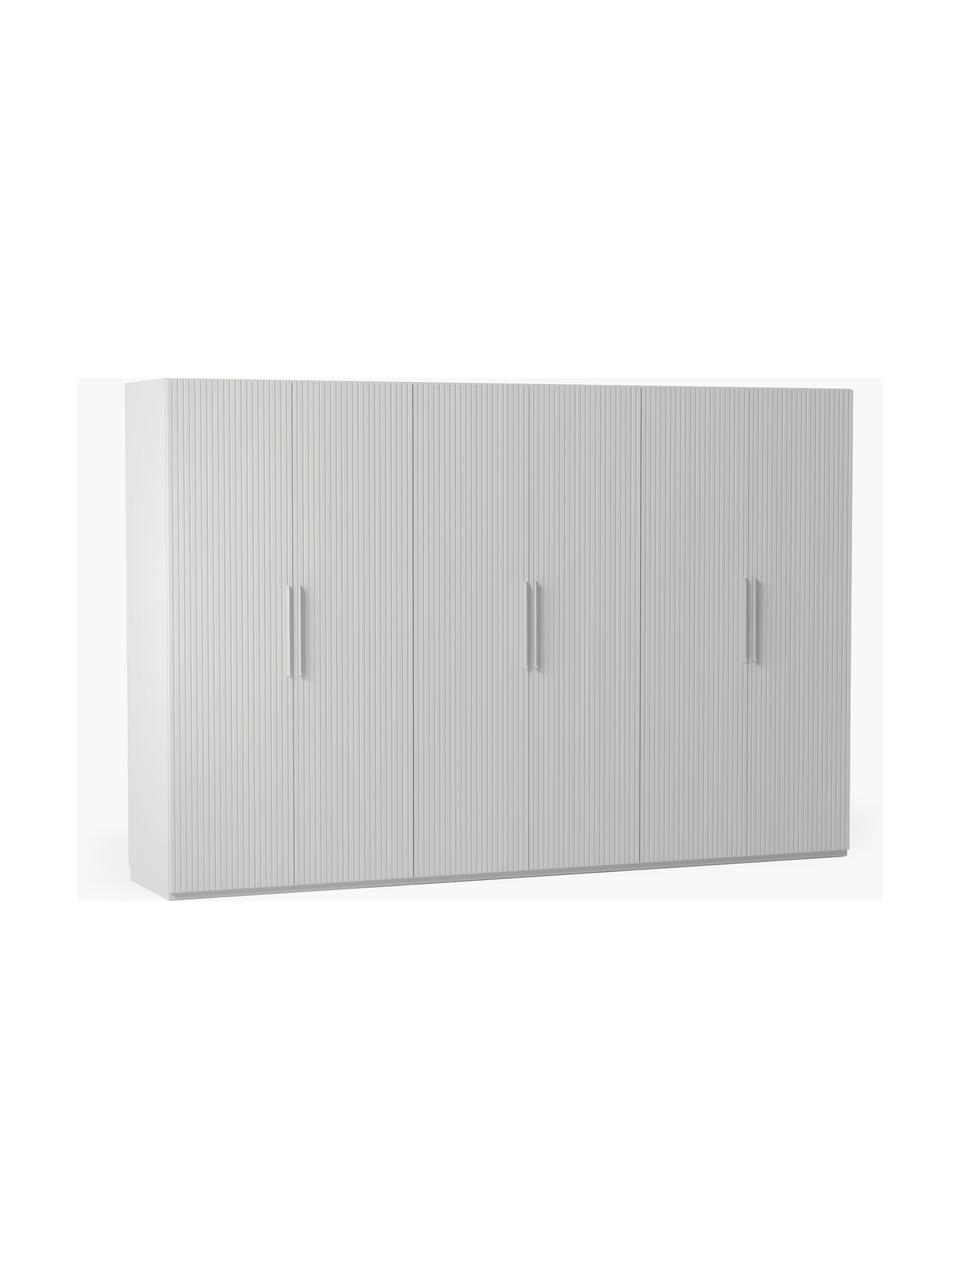 Modulární skříň s otočnými dveřmi Simone, šířka 300 cm, více variant, Dřevo, šedá, Interiér Basic, Š 300 x V 200 cm